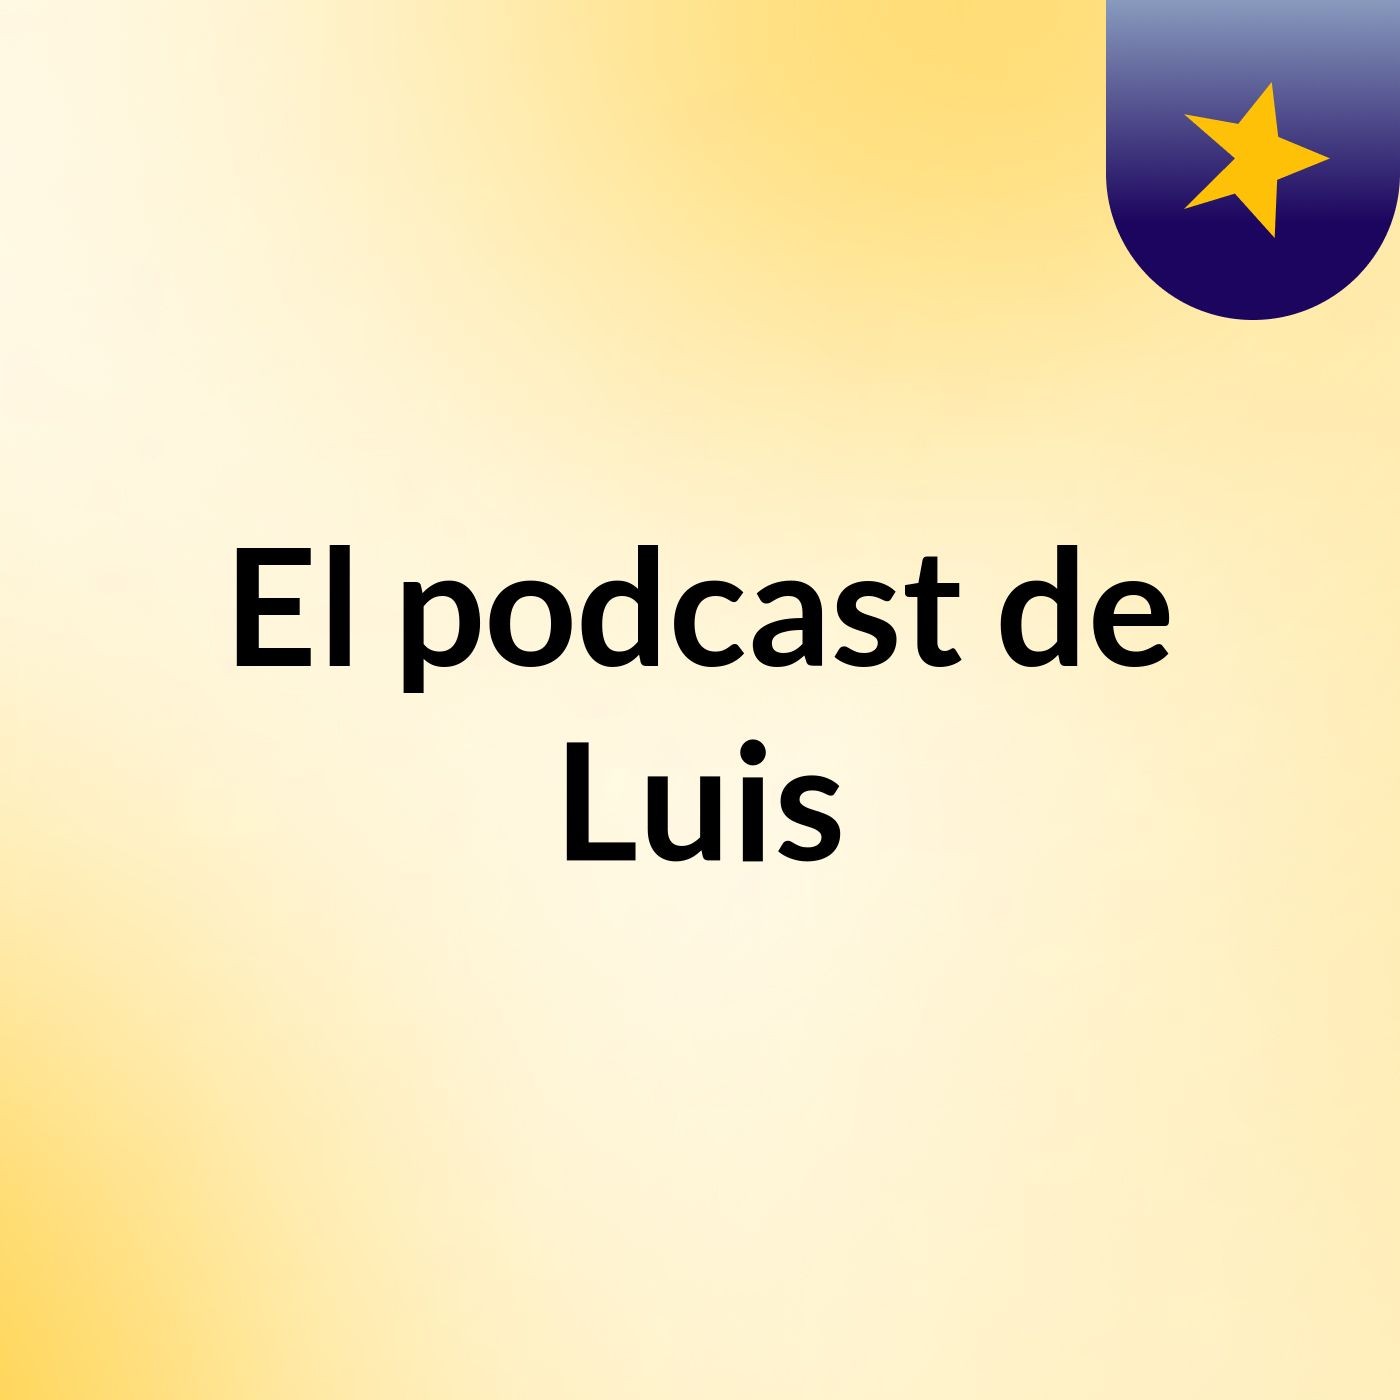 El podcast de Luis